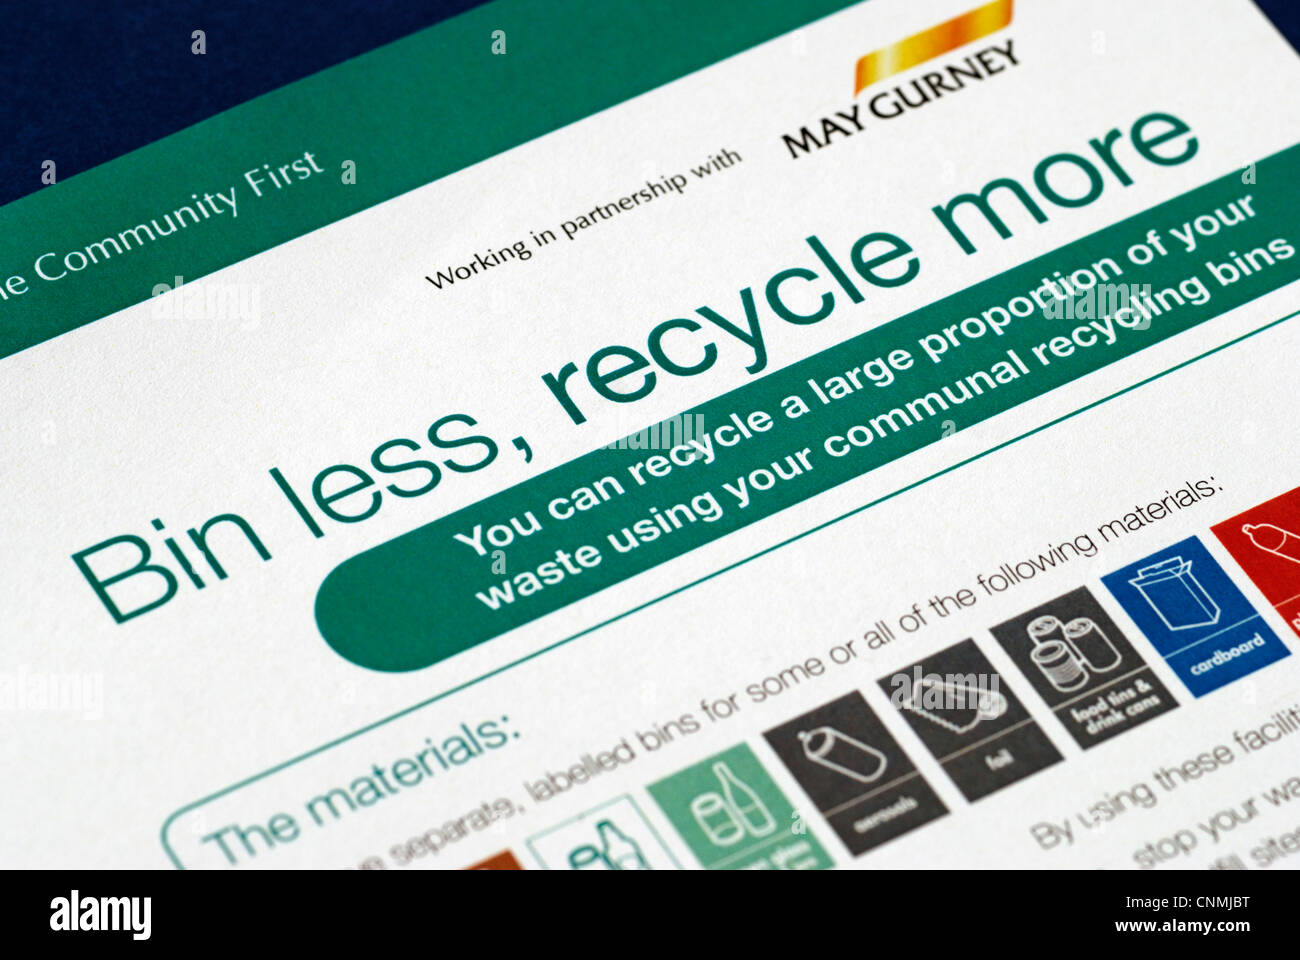 Gemeinderat verweigern recycling Broschüre, die Menschen ermutigen, "bin weniger und mehr recyceln" Stockfoto